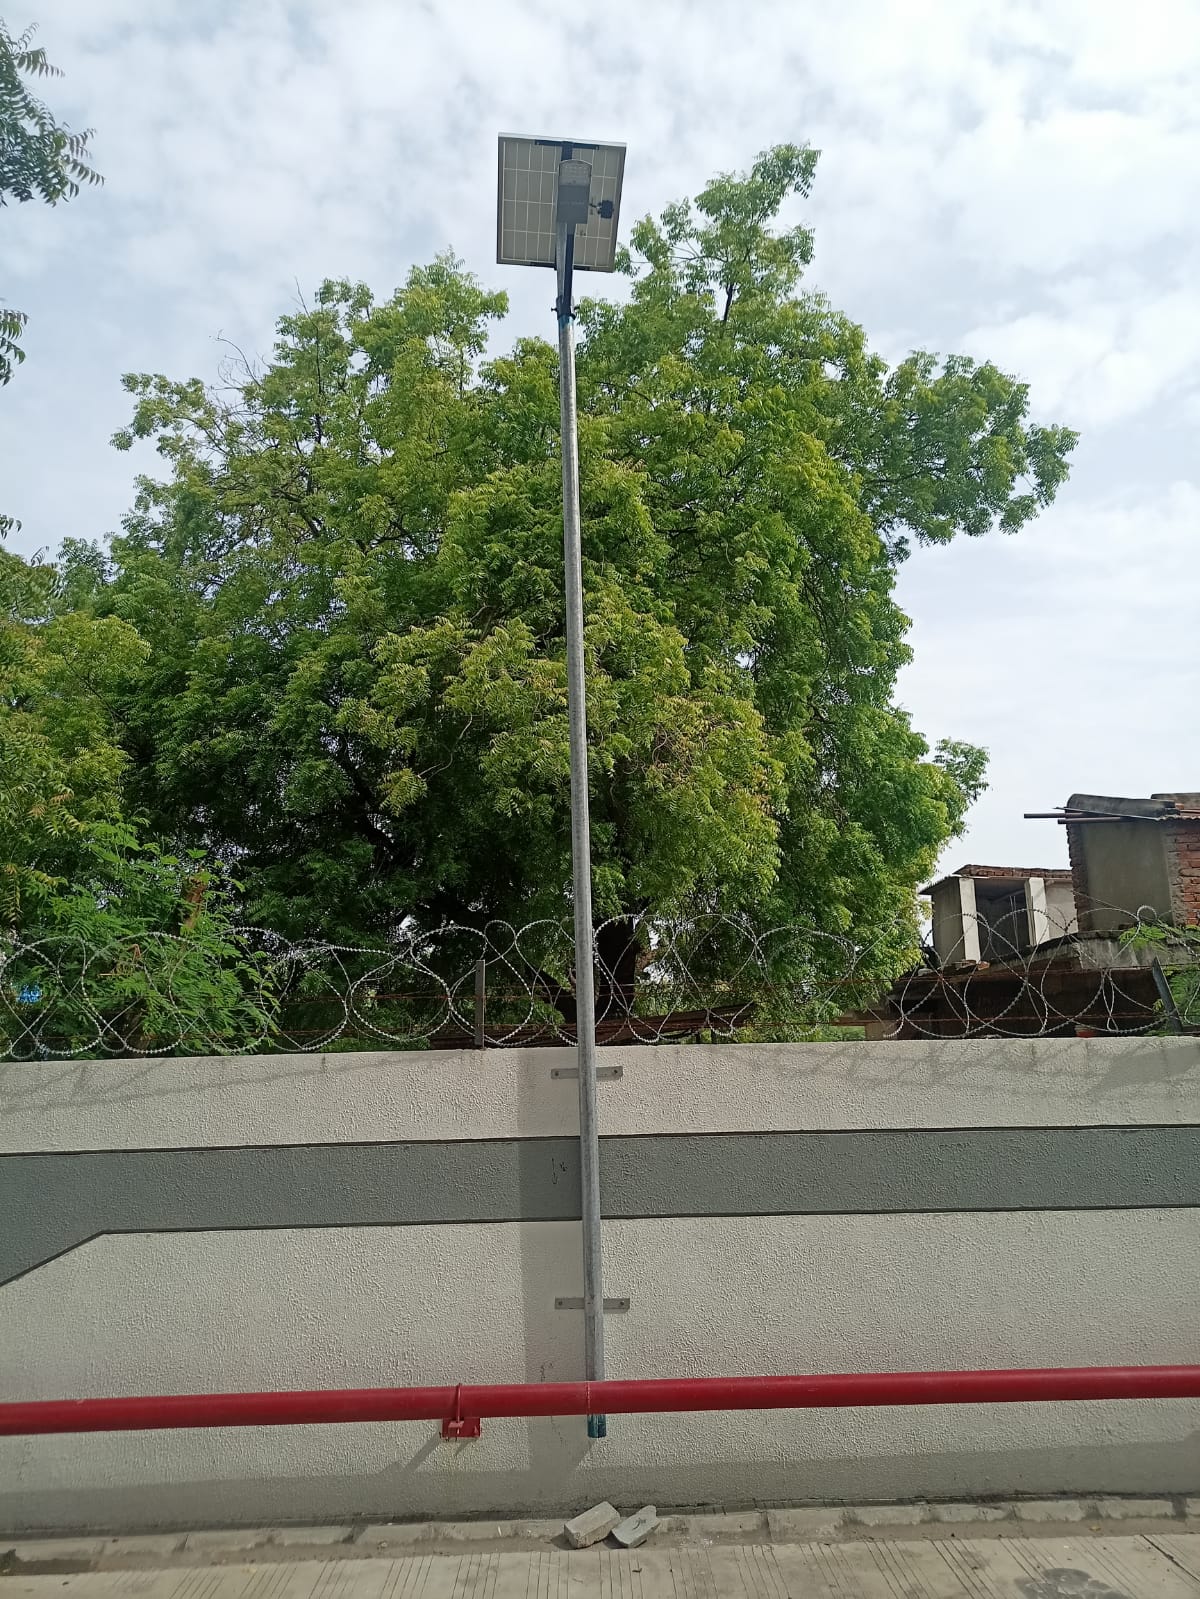 40 Watt solar street light